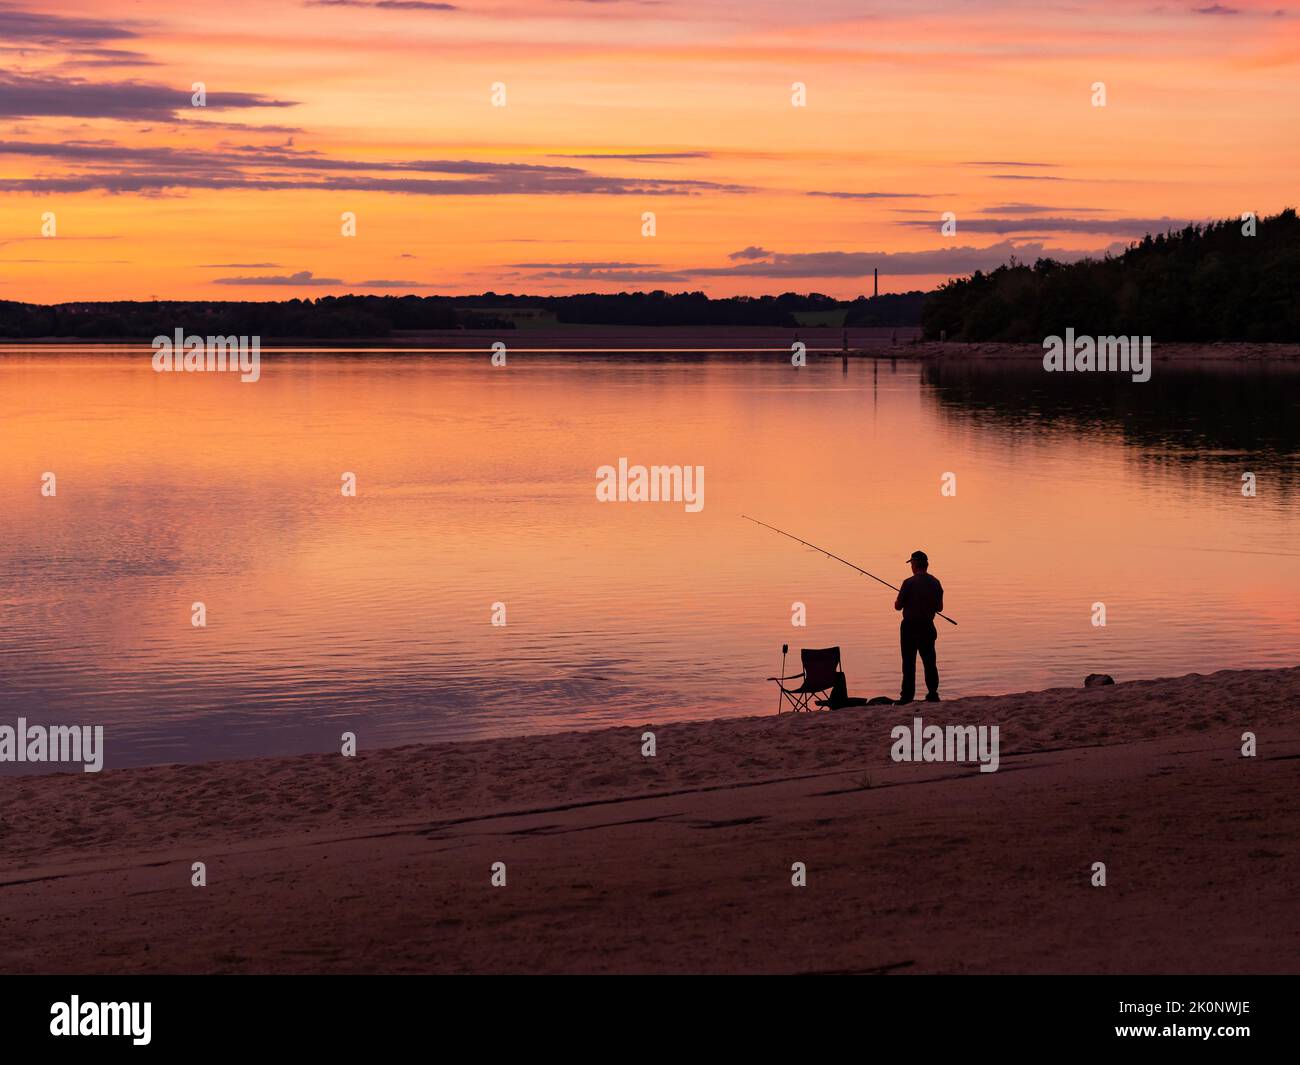 Silhouette eines Angler, der während der Sonnenuntergangszeit in einem See fischt. Ein Fischer in der Dämmerung mit Ausrüstung wie einem Campingstuhl. Der Sandstrand ist sichtbar. Stockfoto